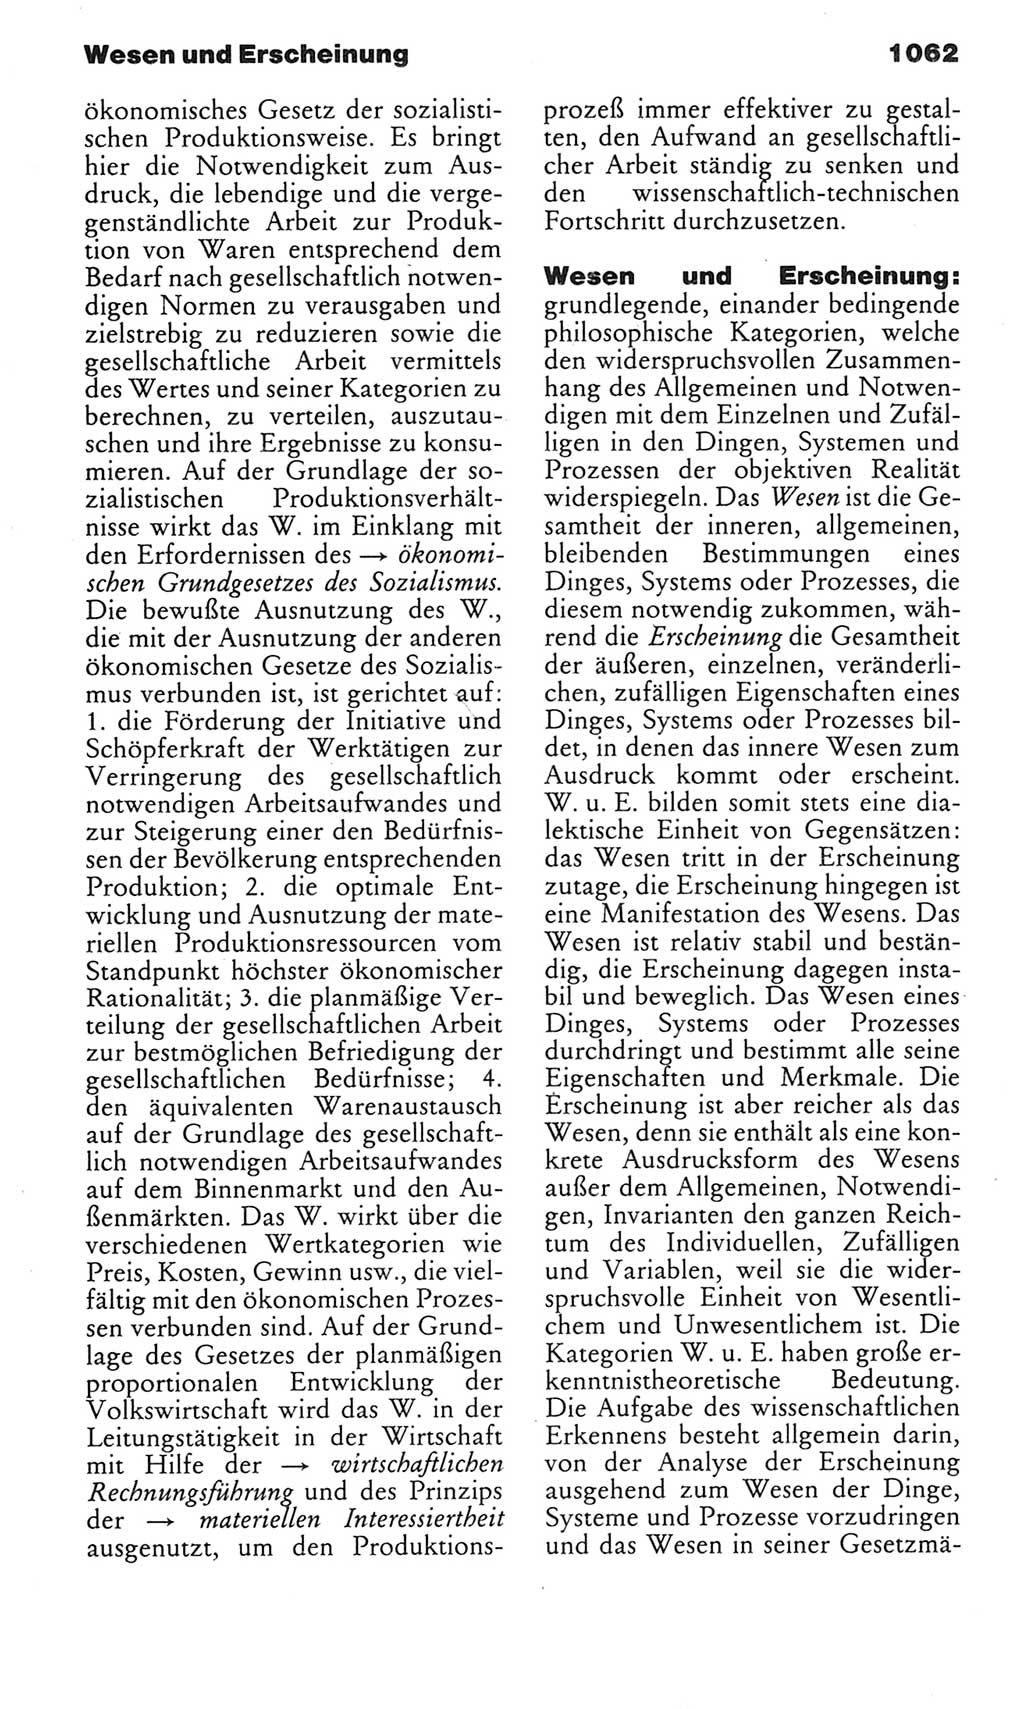 Kleines politisches Wörterbuch [Deutsche Demokratische Republik (DDR)] 1983, Seite 1062 (Kl. pol. Wb. DDR 1983, S. 1062)